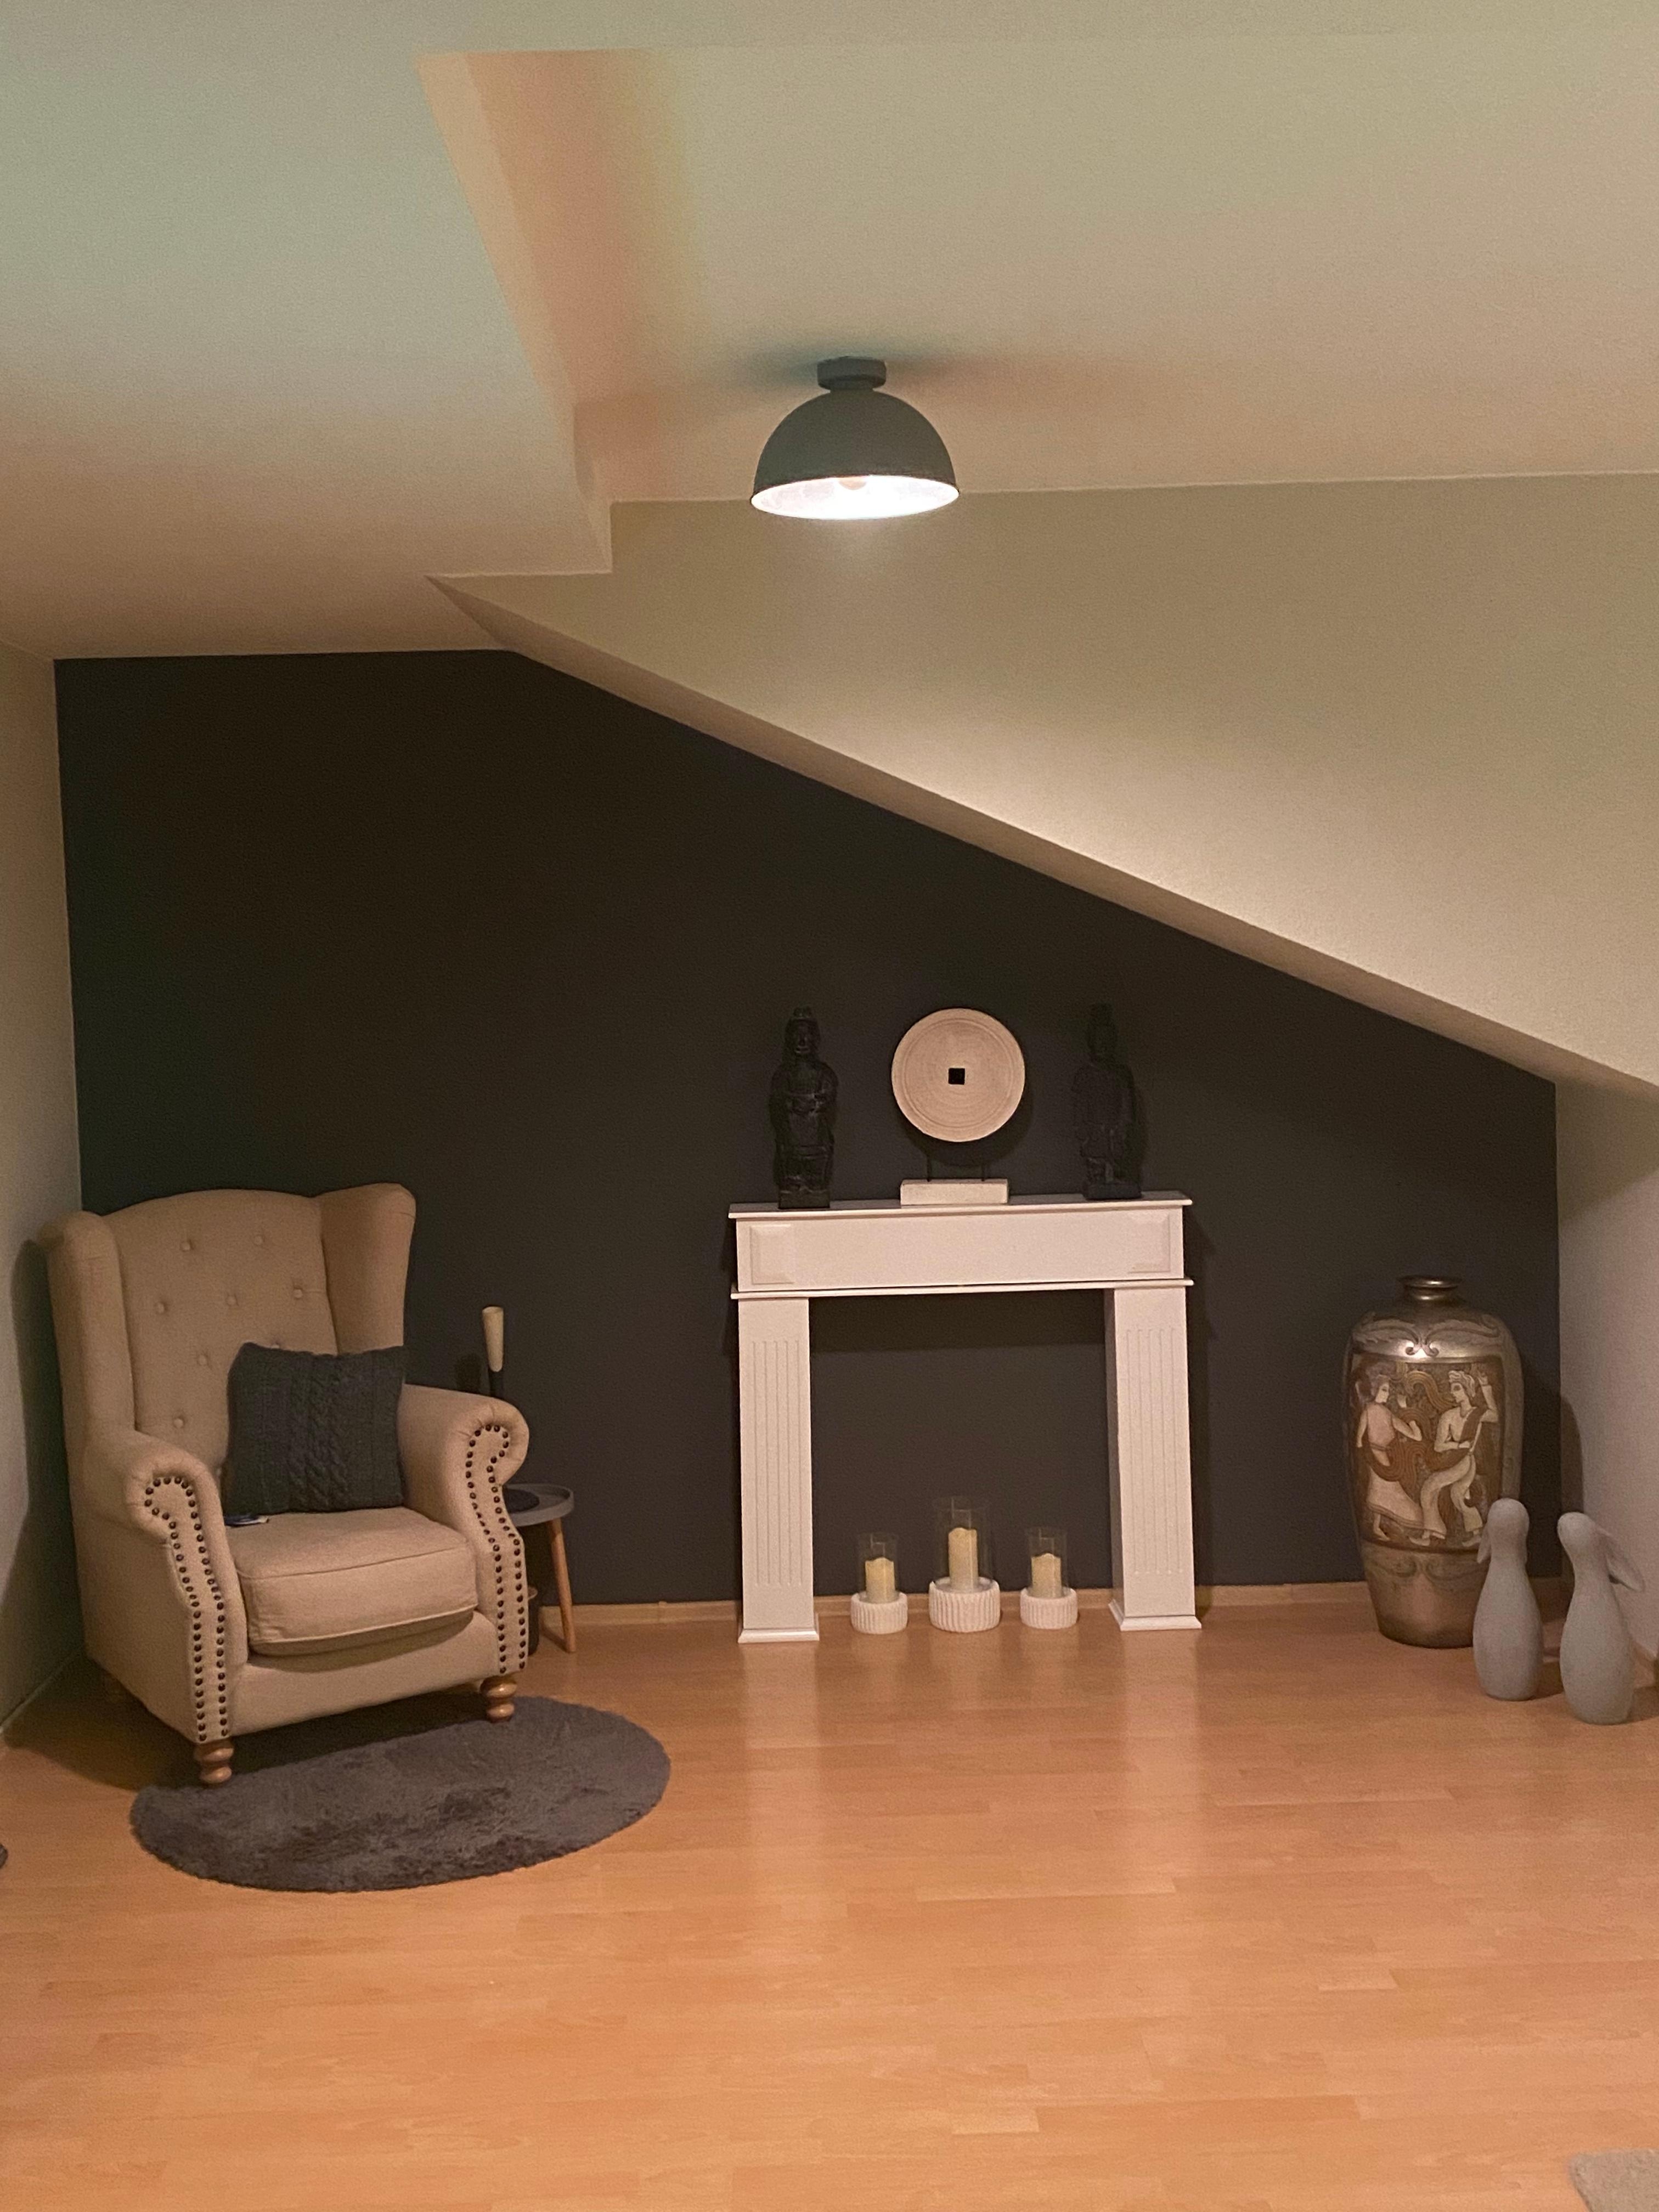 Wohnzimmer mit neuer Farbe.
#wohnzimmer #grauewand #scandi #schönerwohnen #beigewandfarbe